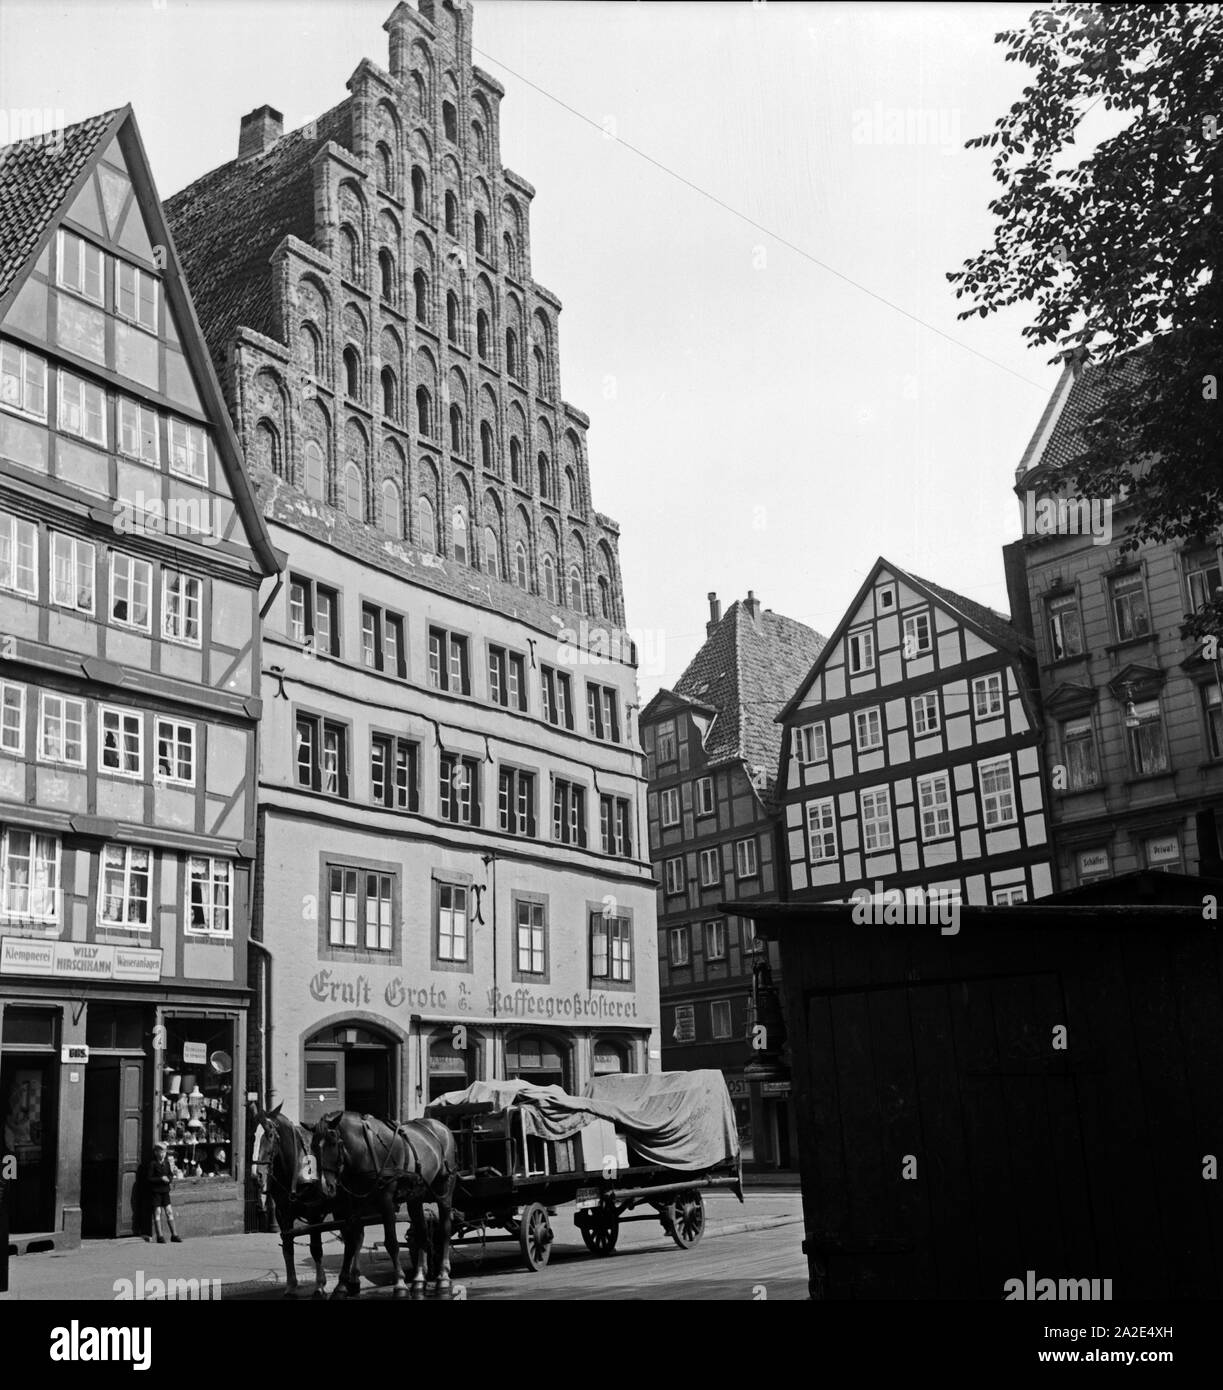 Die alte Kanzlei gegenüber der Ägidienkirche in Hannover, Deutschland 1930er Jahre. Old chancellery in the old city of Hanover, Germany 1930s. Stock Photo